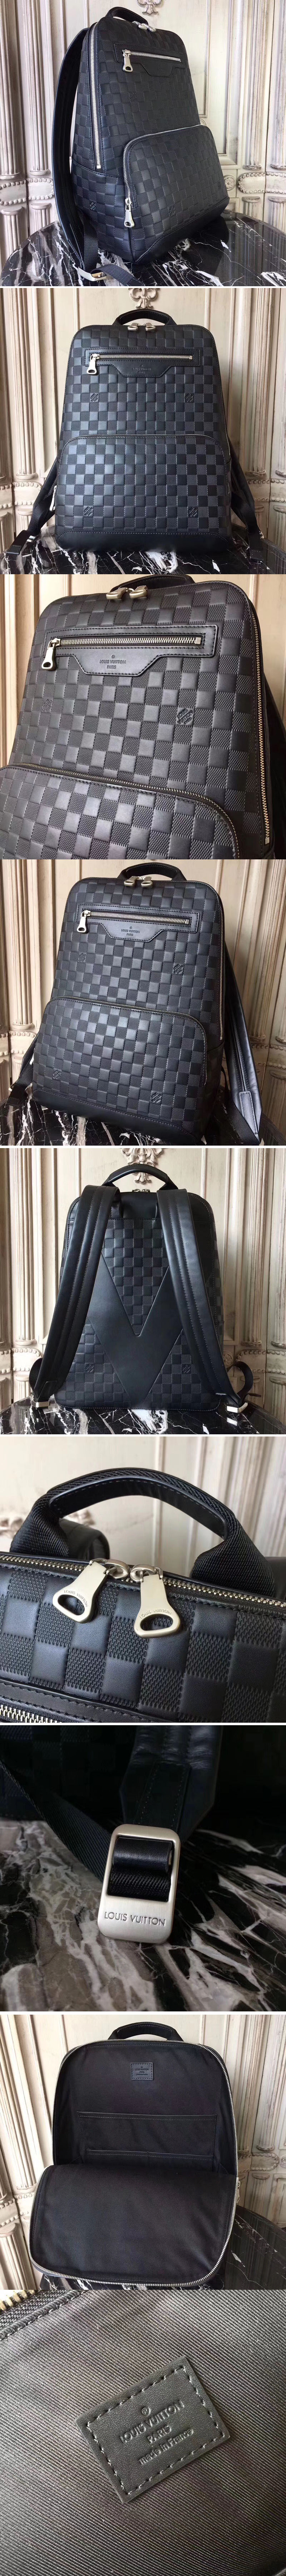 Louis Vuitton M69992 LV Since 1854 Dauphine Chain Wallet bag in Bordeaux  Jacquard Since 1854 textile Replica sale online ,buy fake bag